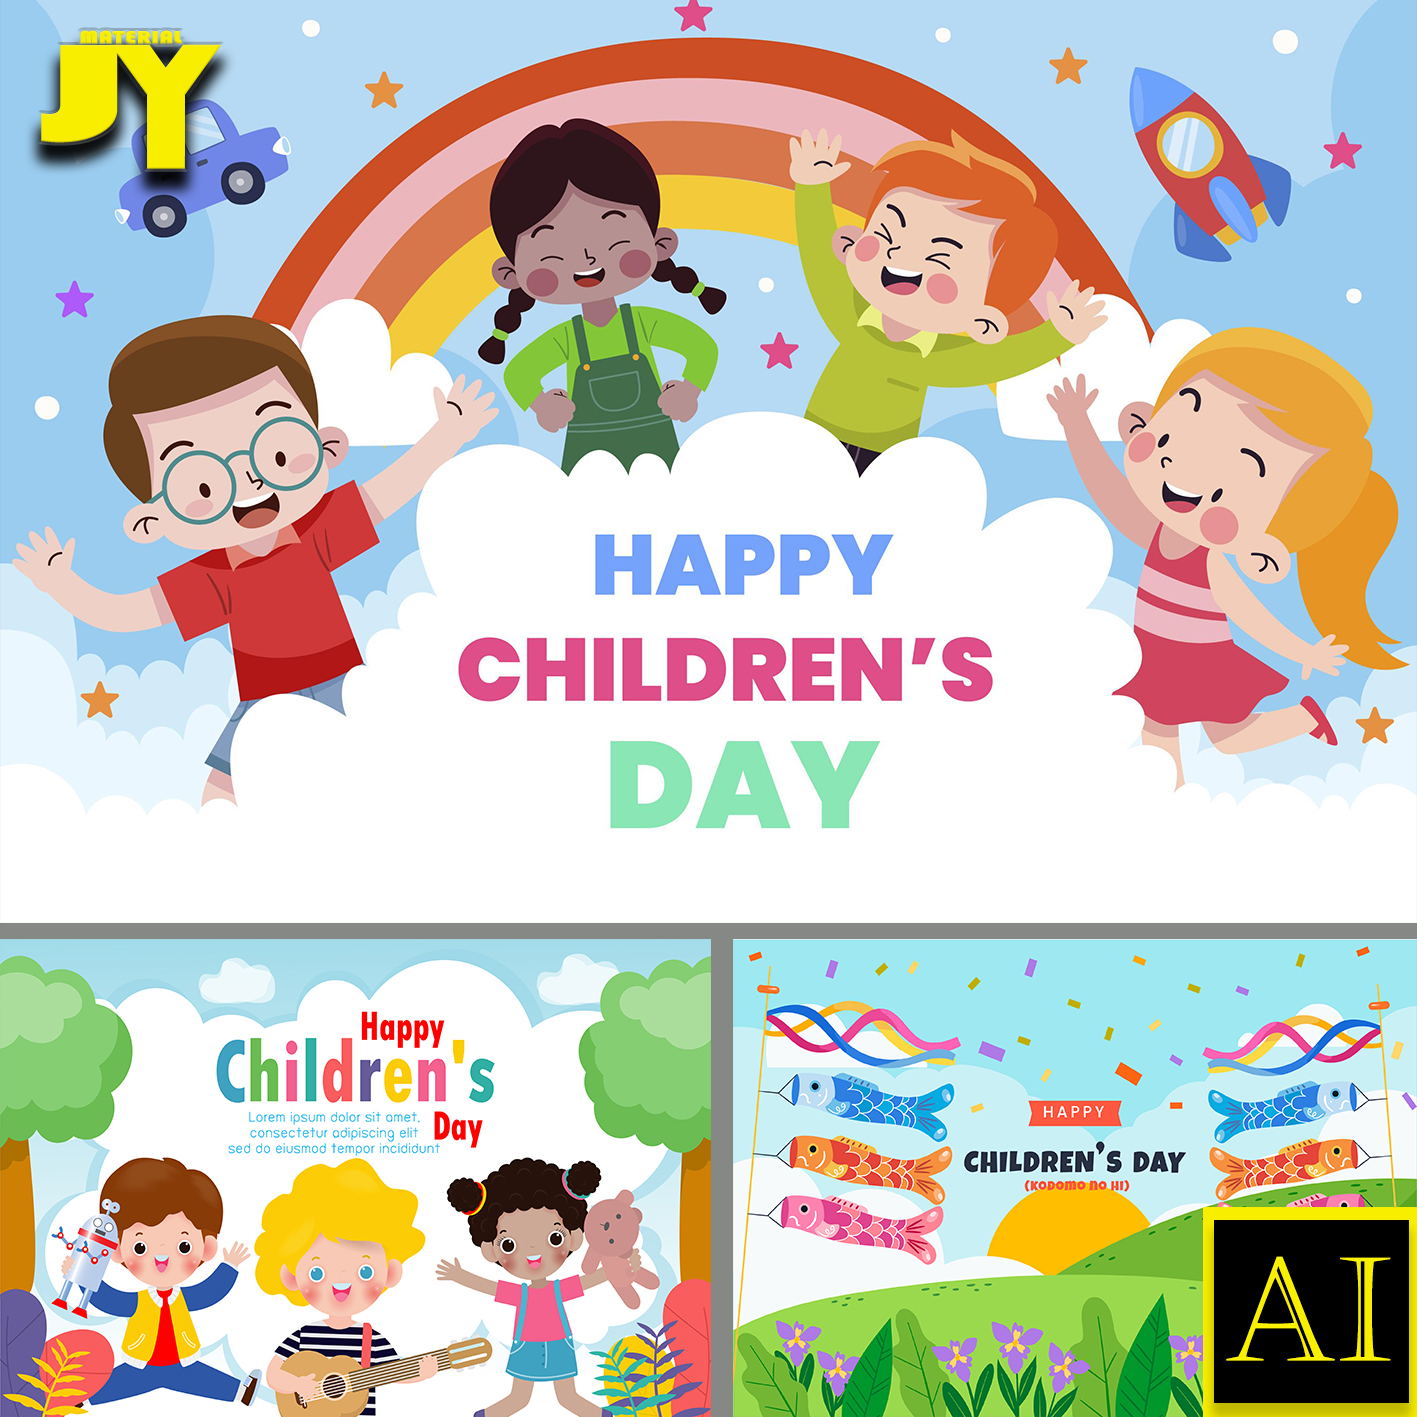 彩旗彩虹彩色气球男孩女孩六一儿童节背景展板海报插画设计AI素材